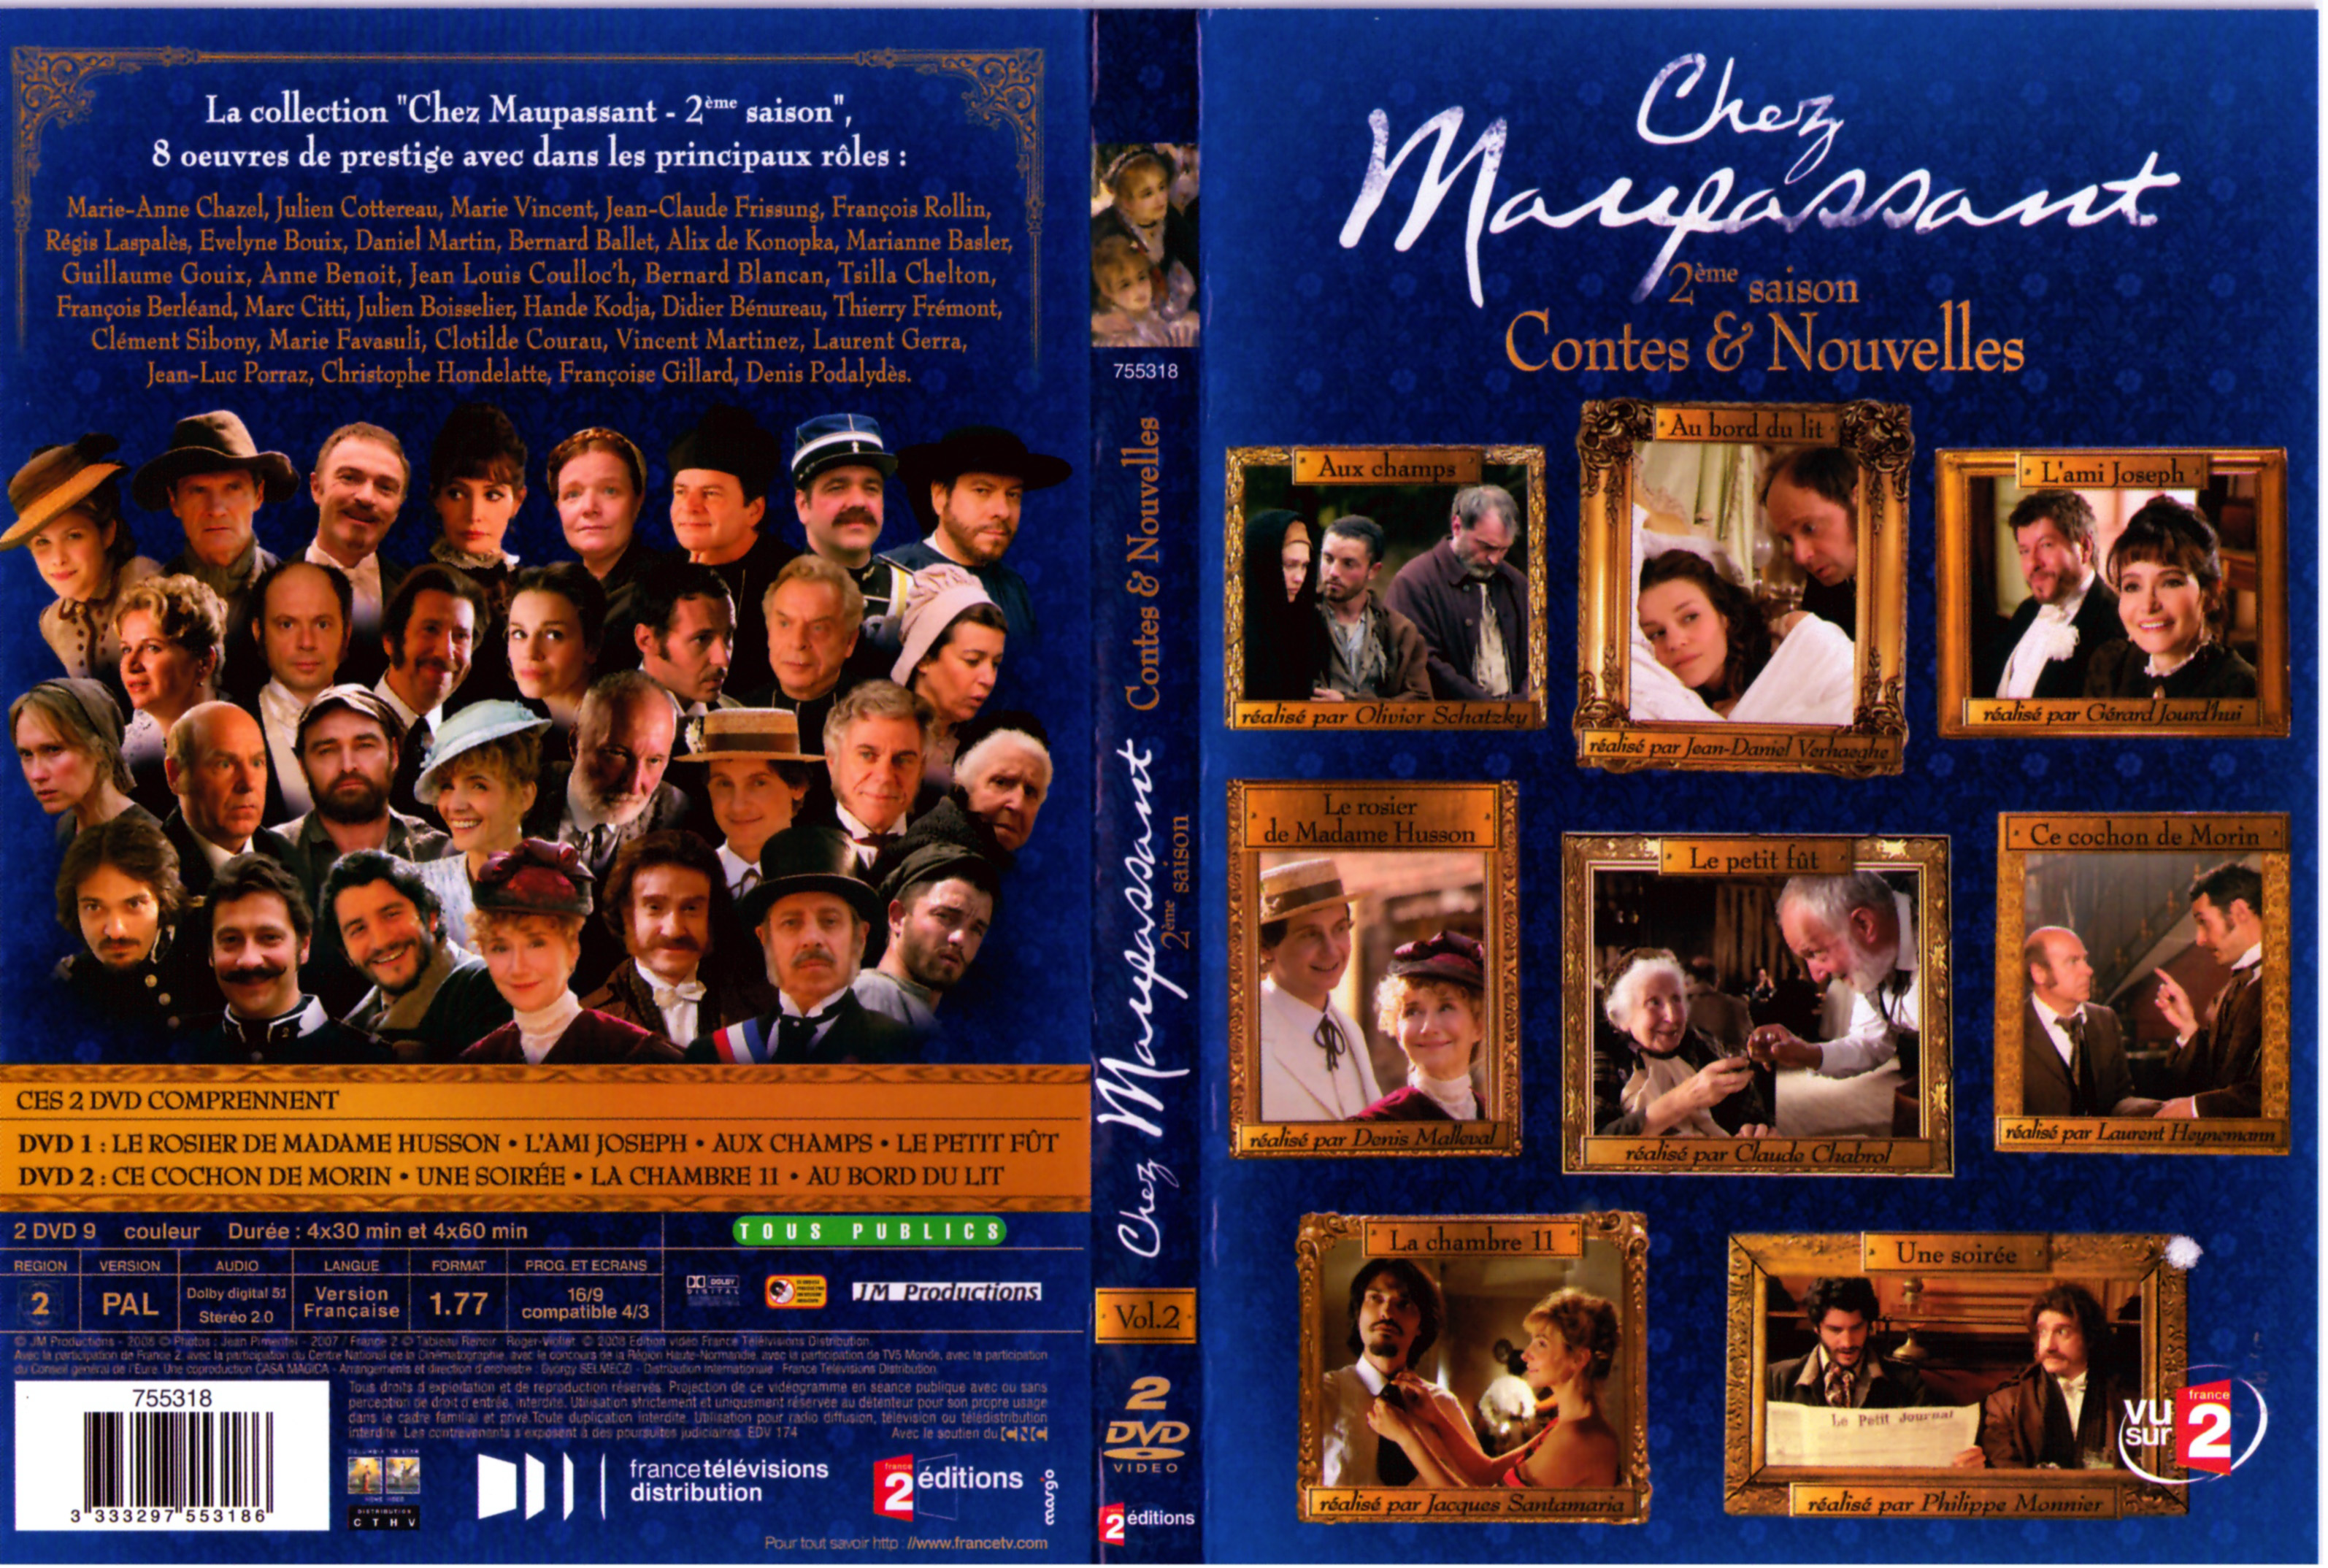 Jaquette DVD Chez Maupassant - Contes et Nouvelles Saison 2